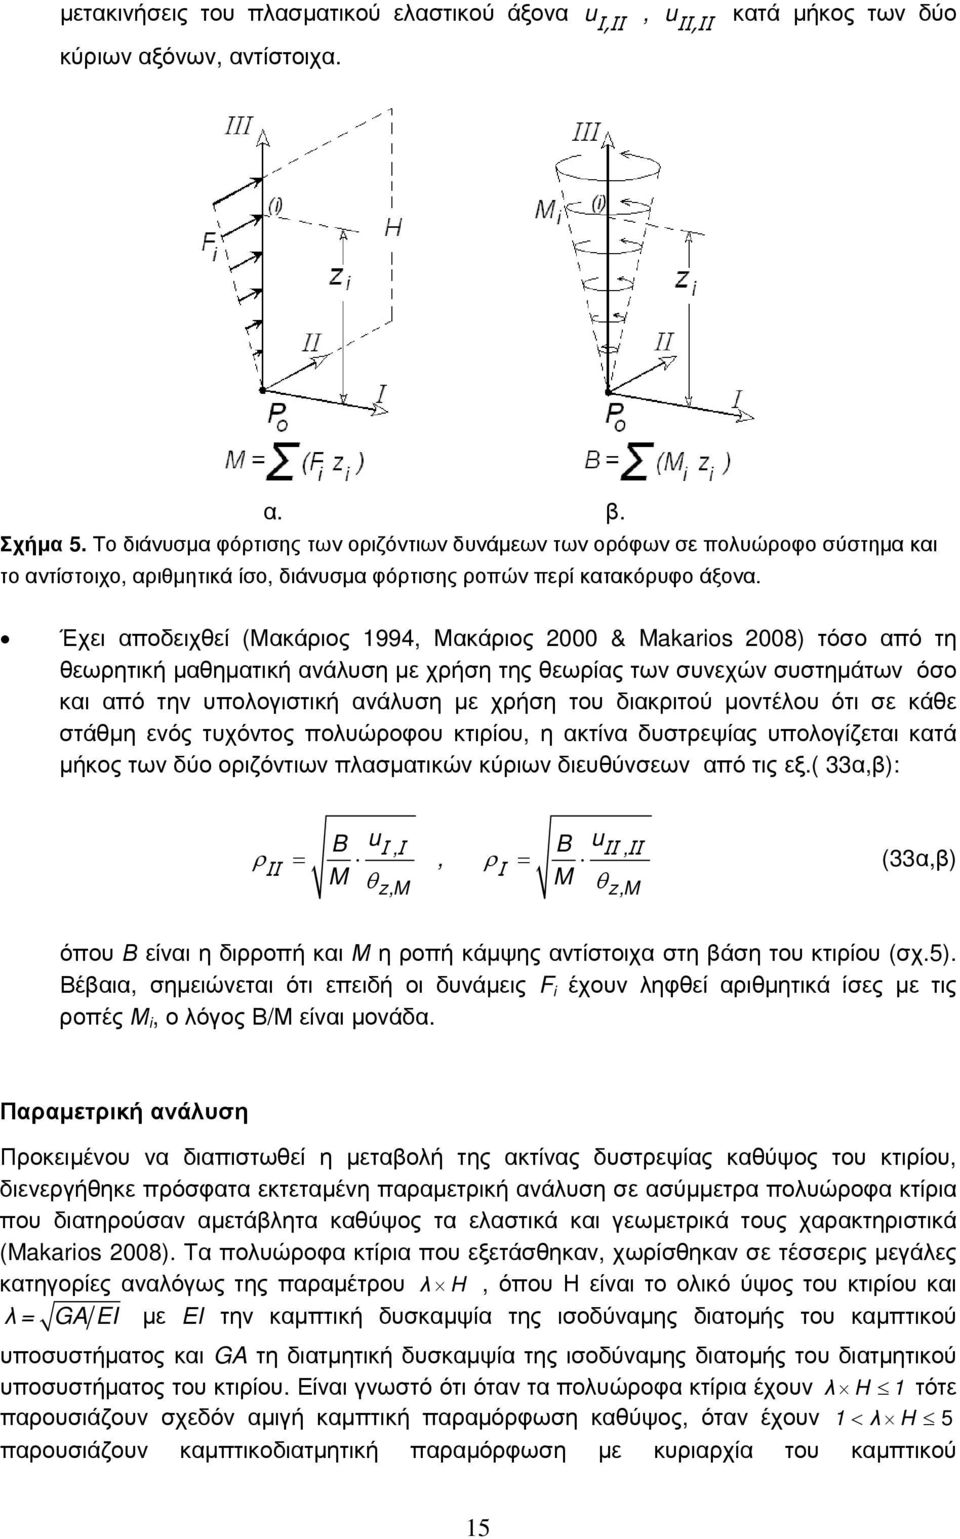 Έχει αποδειχθεί (Μακάριος 1994, Μακάριος 000 & Maarios 008) τόσο από τη θεωρητική μαθηματική ανάλυση με χρήση της θεωρίας των συνεχών συστημάτων όσο και από την υπολογιστική ανάλυση με χρήση του